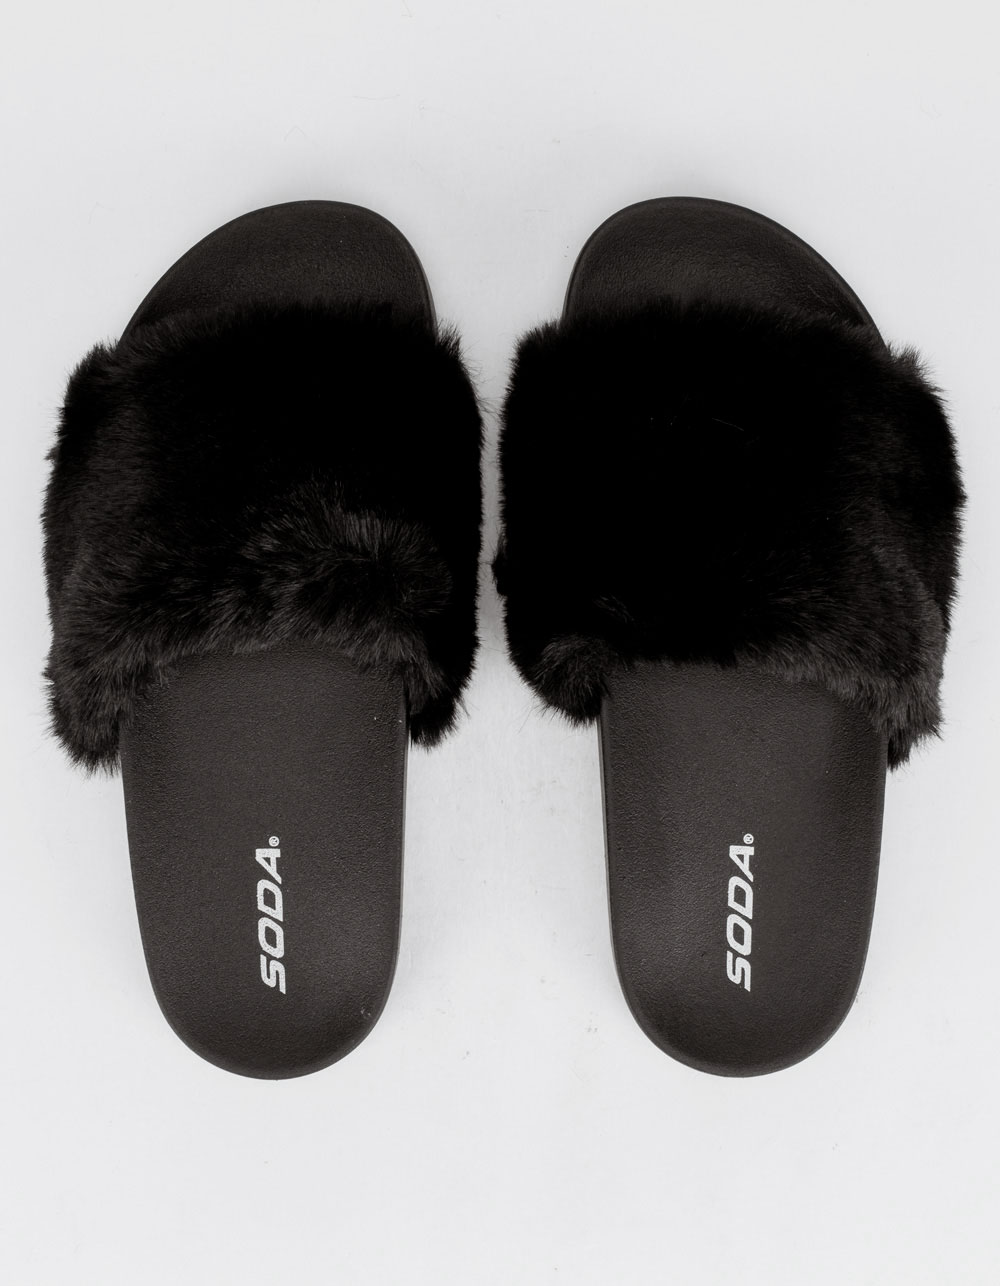 Real Fur Slides in Black Beaver Full Skin Rubber Fur Slippon 